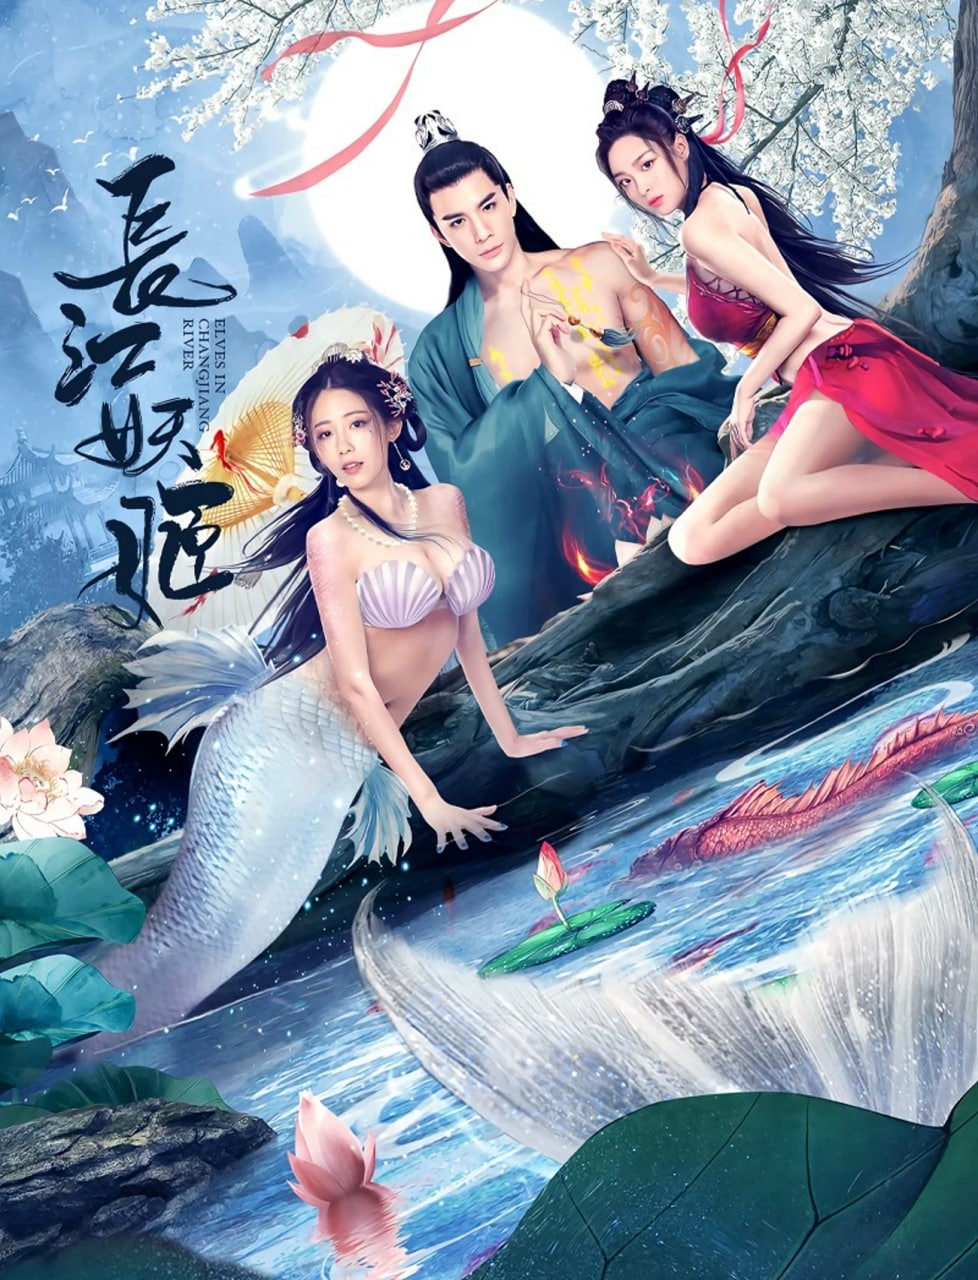 Poster Phim Trường Giang Yêu Cơ (Elves In Changjiang River)